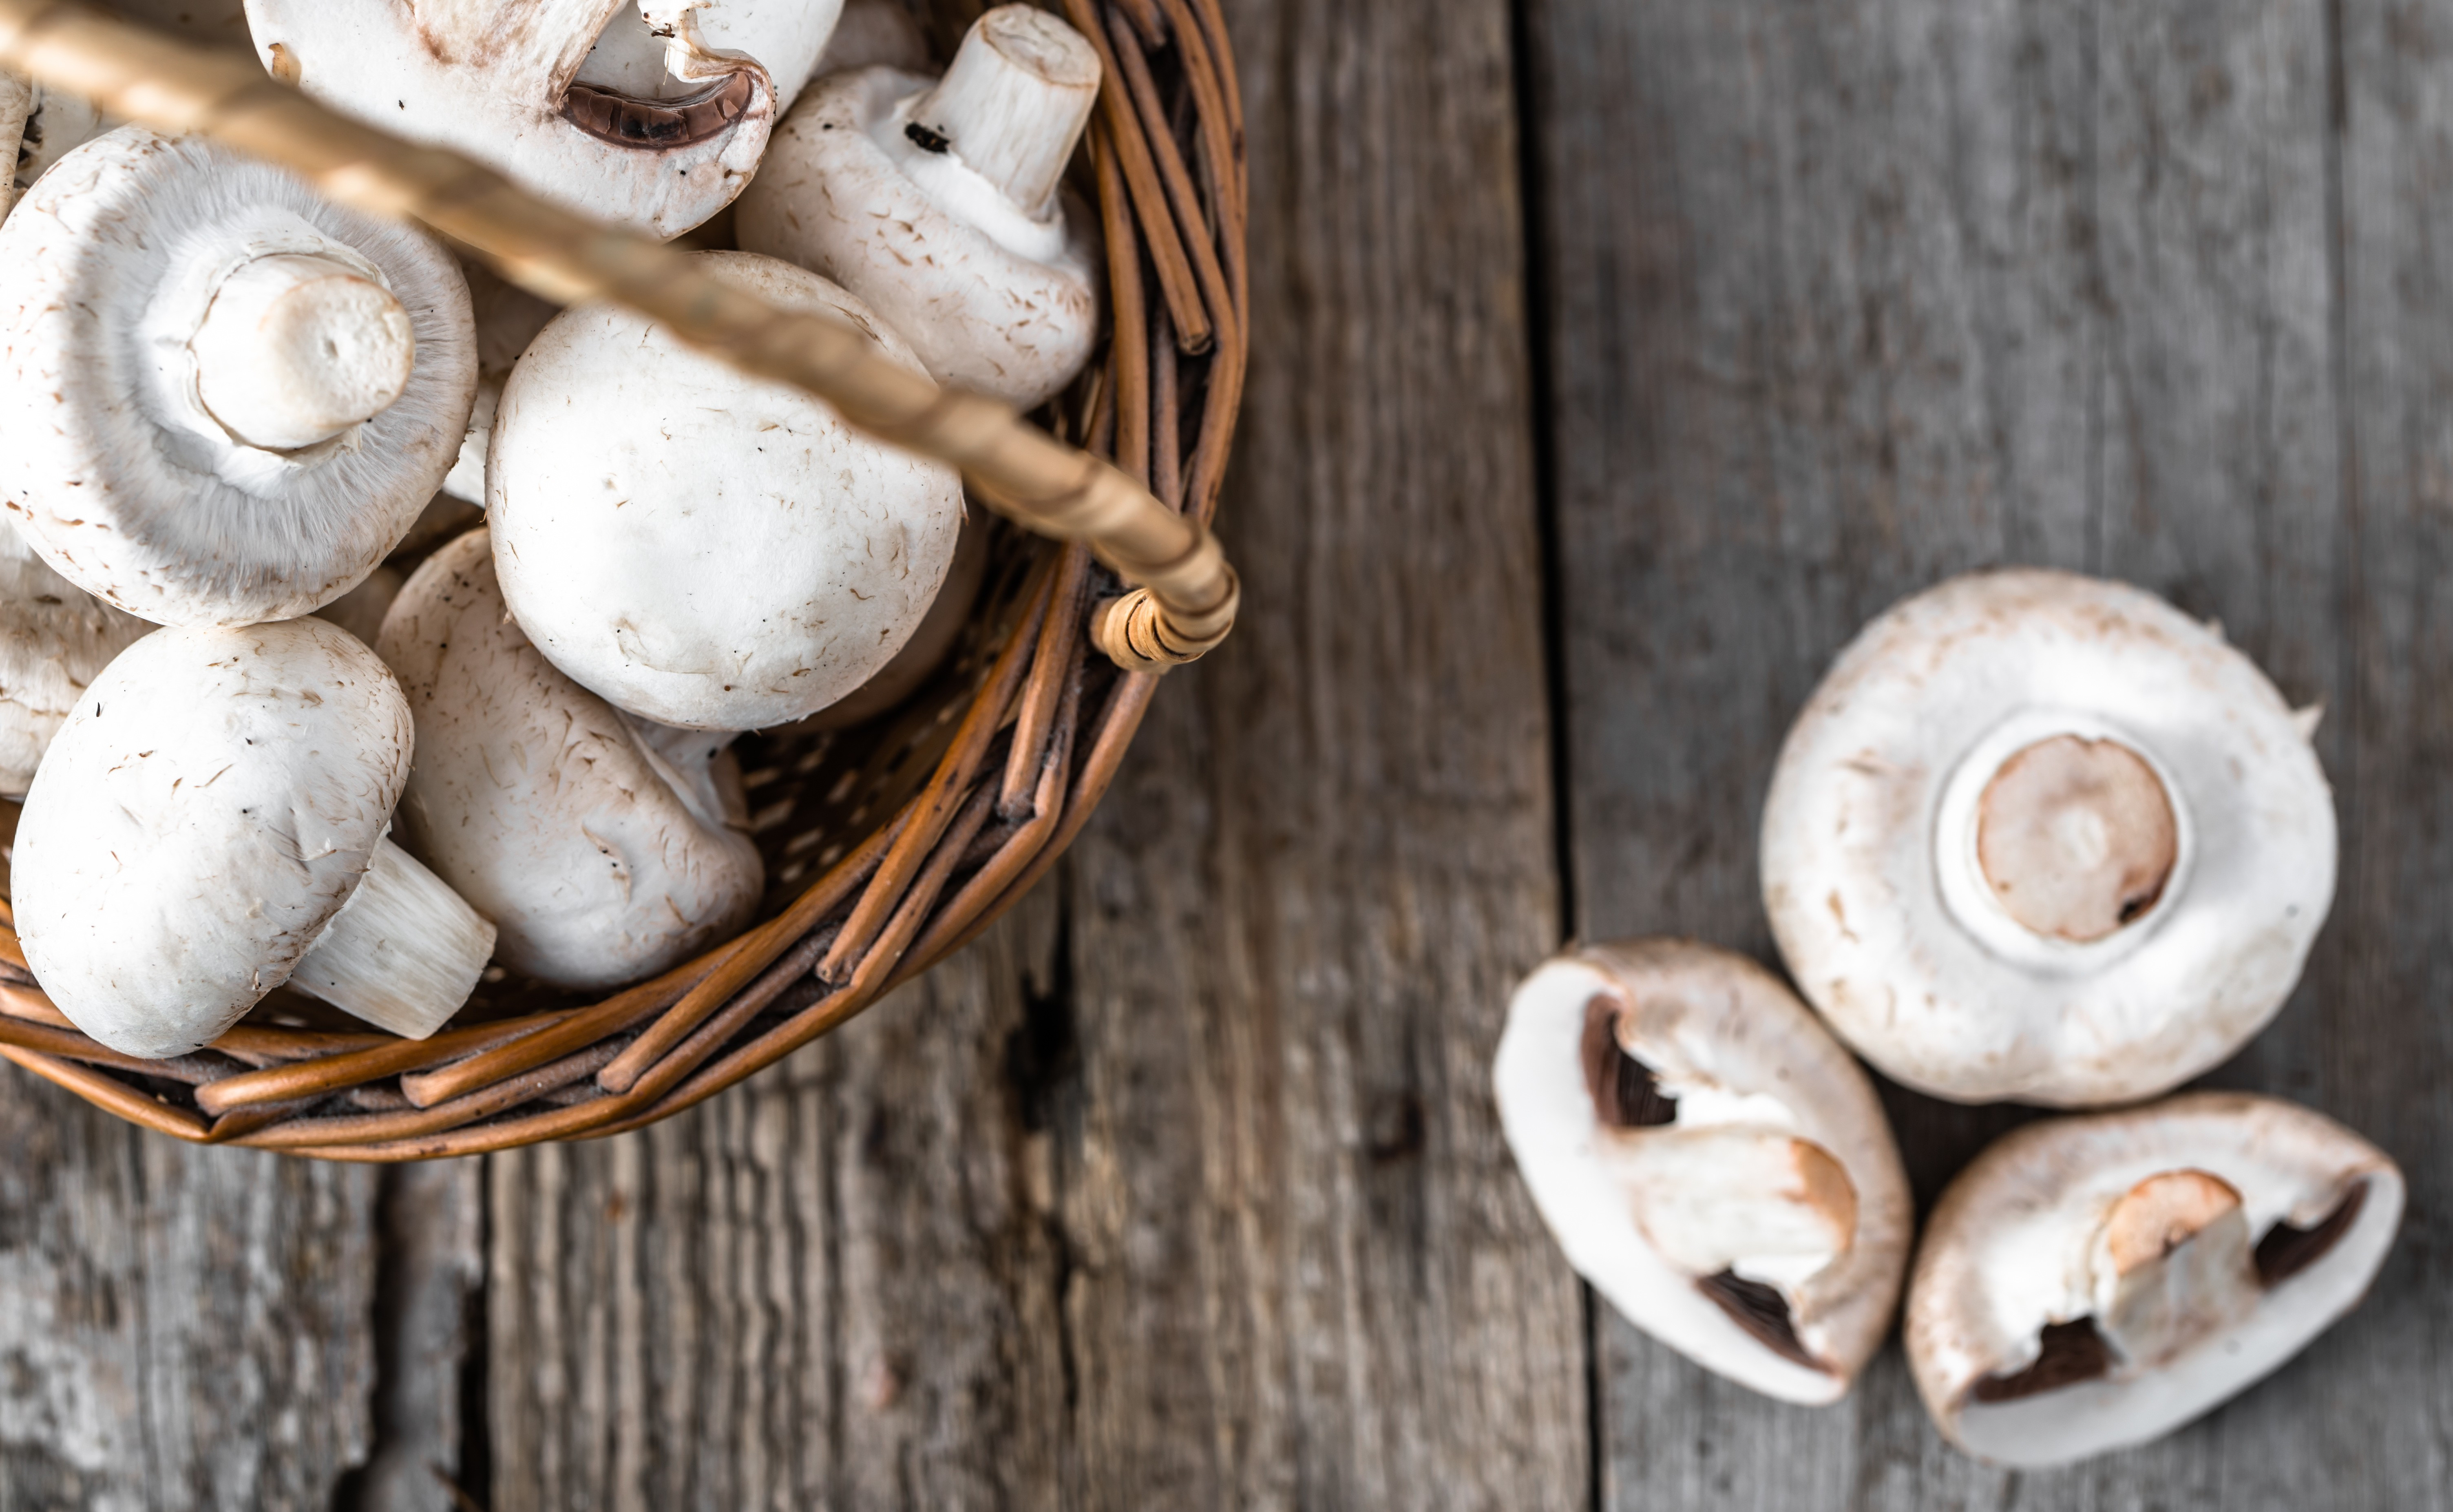 Домашняя грибница - Белые грибы. Набор для выращивания грибов дома.